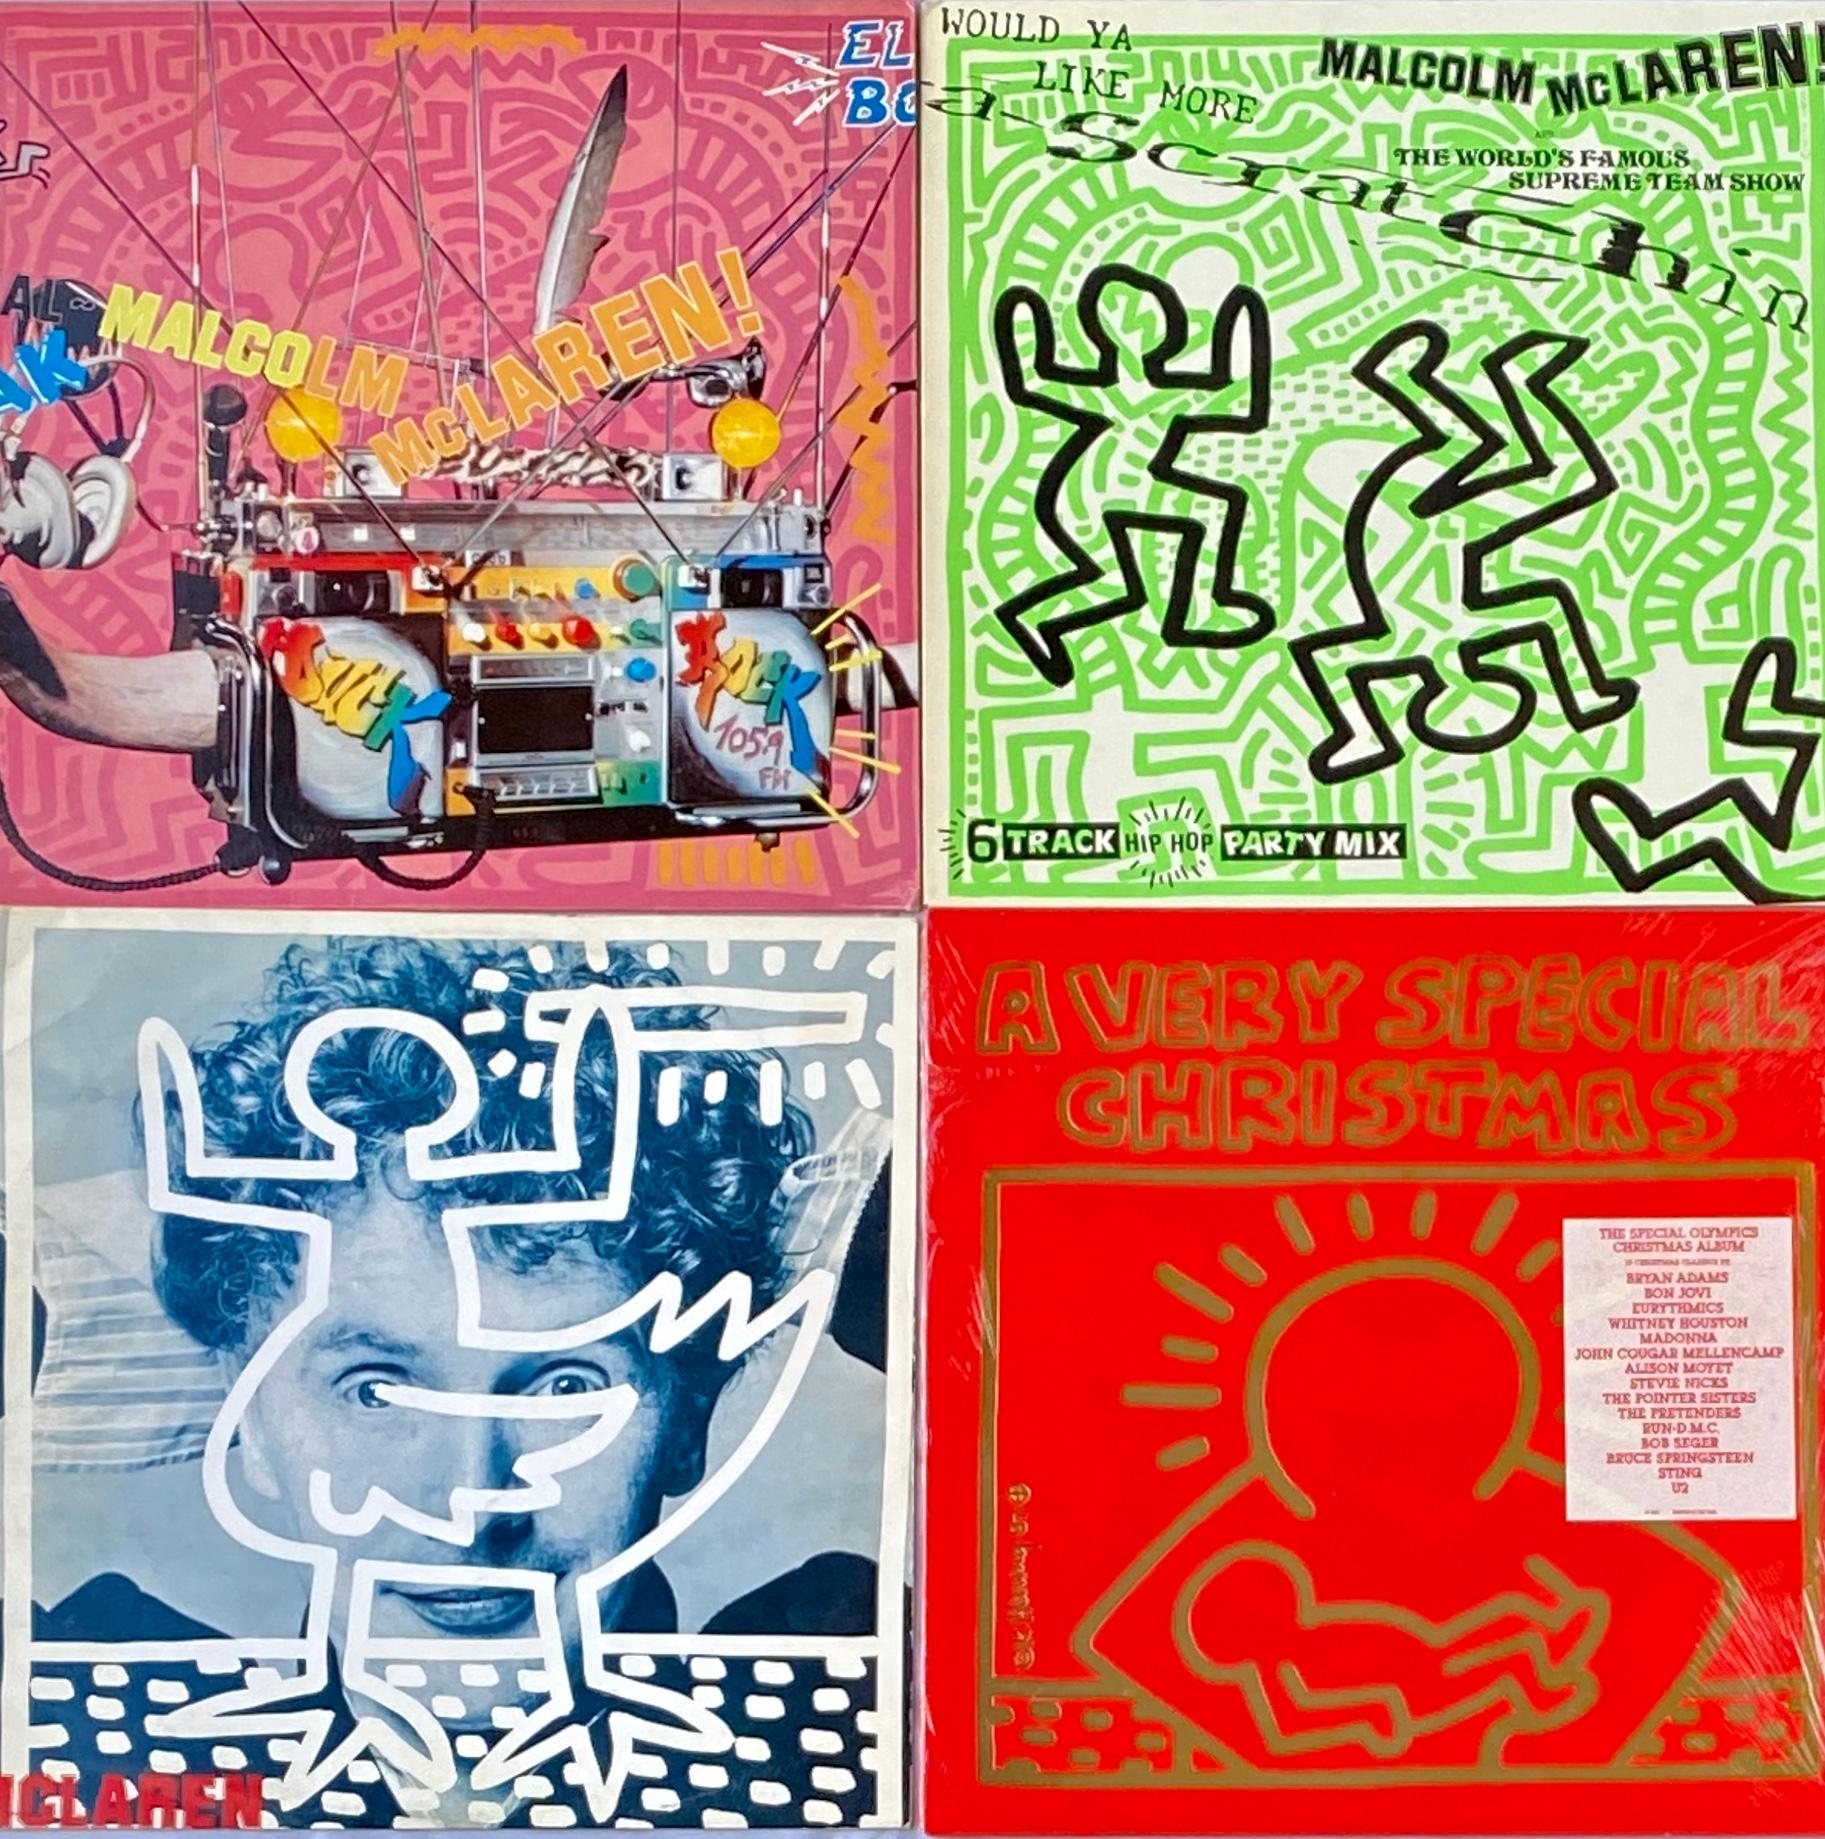 Vintage Keith Haring Plattencover Kunst: Satz von 4: 1982 & 1987.
Haring Illustrationen erscheinen auf Vorder-und Rückseite jedes der 4 Plattencover, sowie 2 Einsätze (siehe letzte 2 Bilder). 4 Alben in insgesamt machen für herausragende 1980er